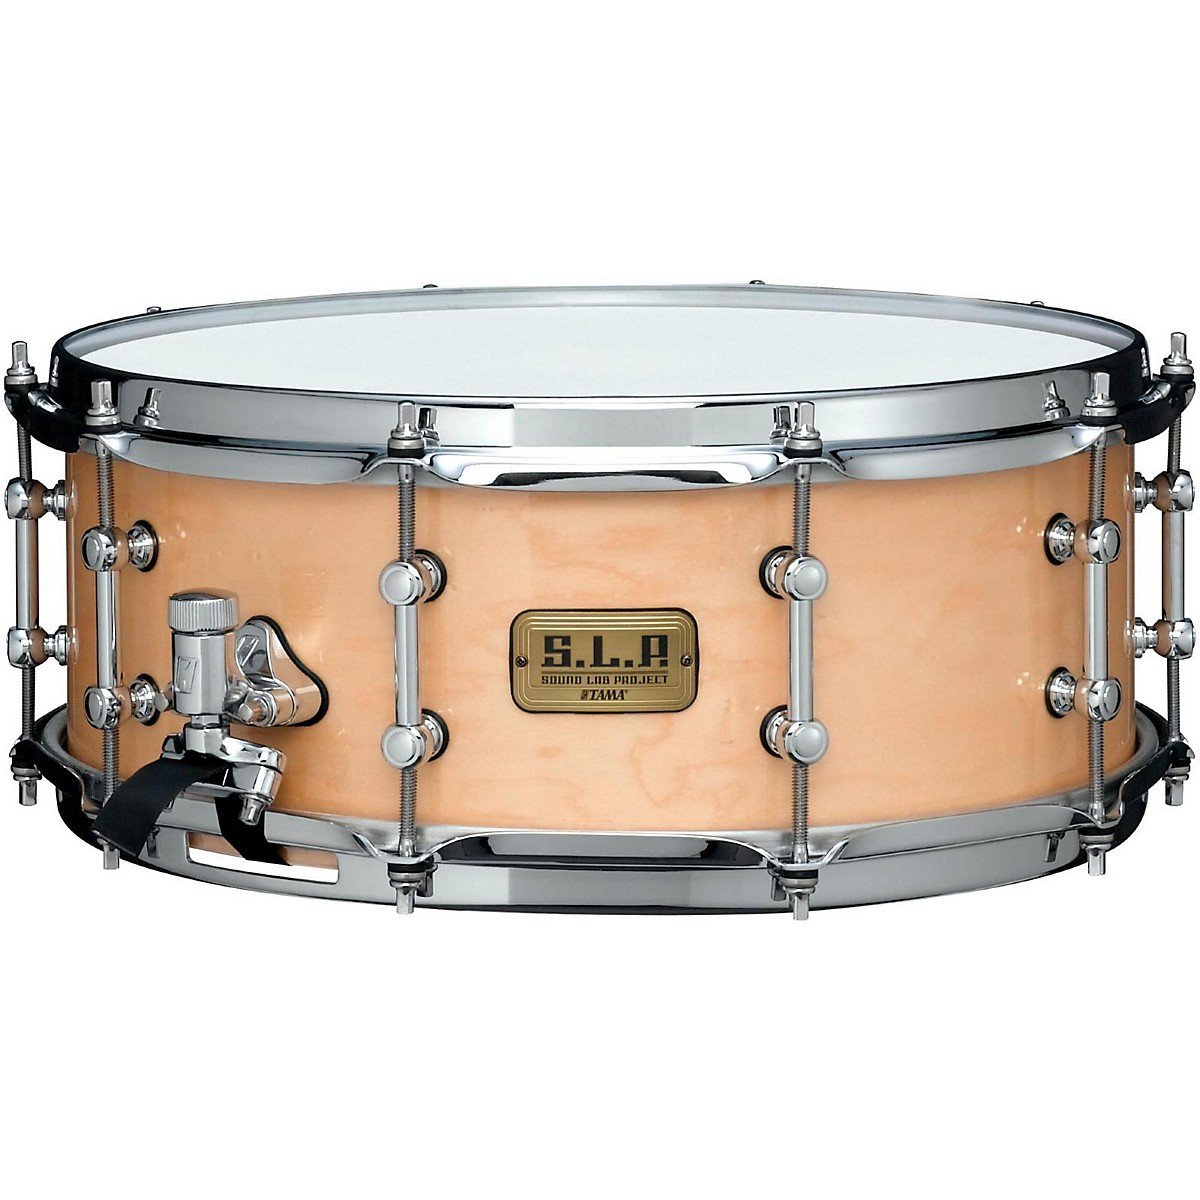 Tama S.L.P. Classic Maple Snare Drum 14 x 5.5 in. Super Maple